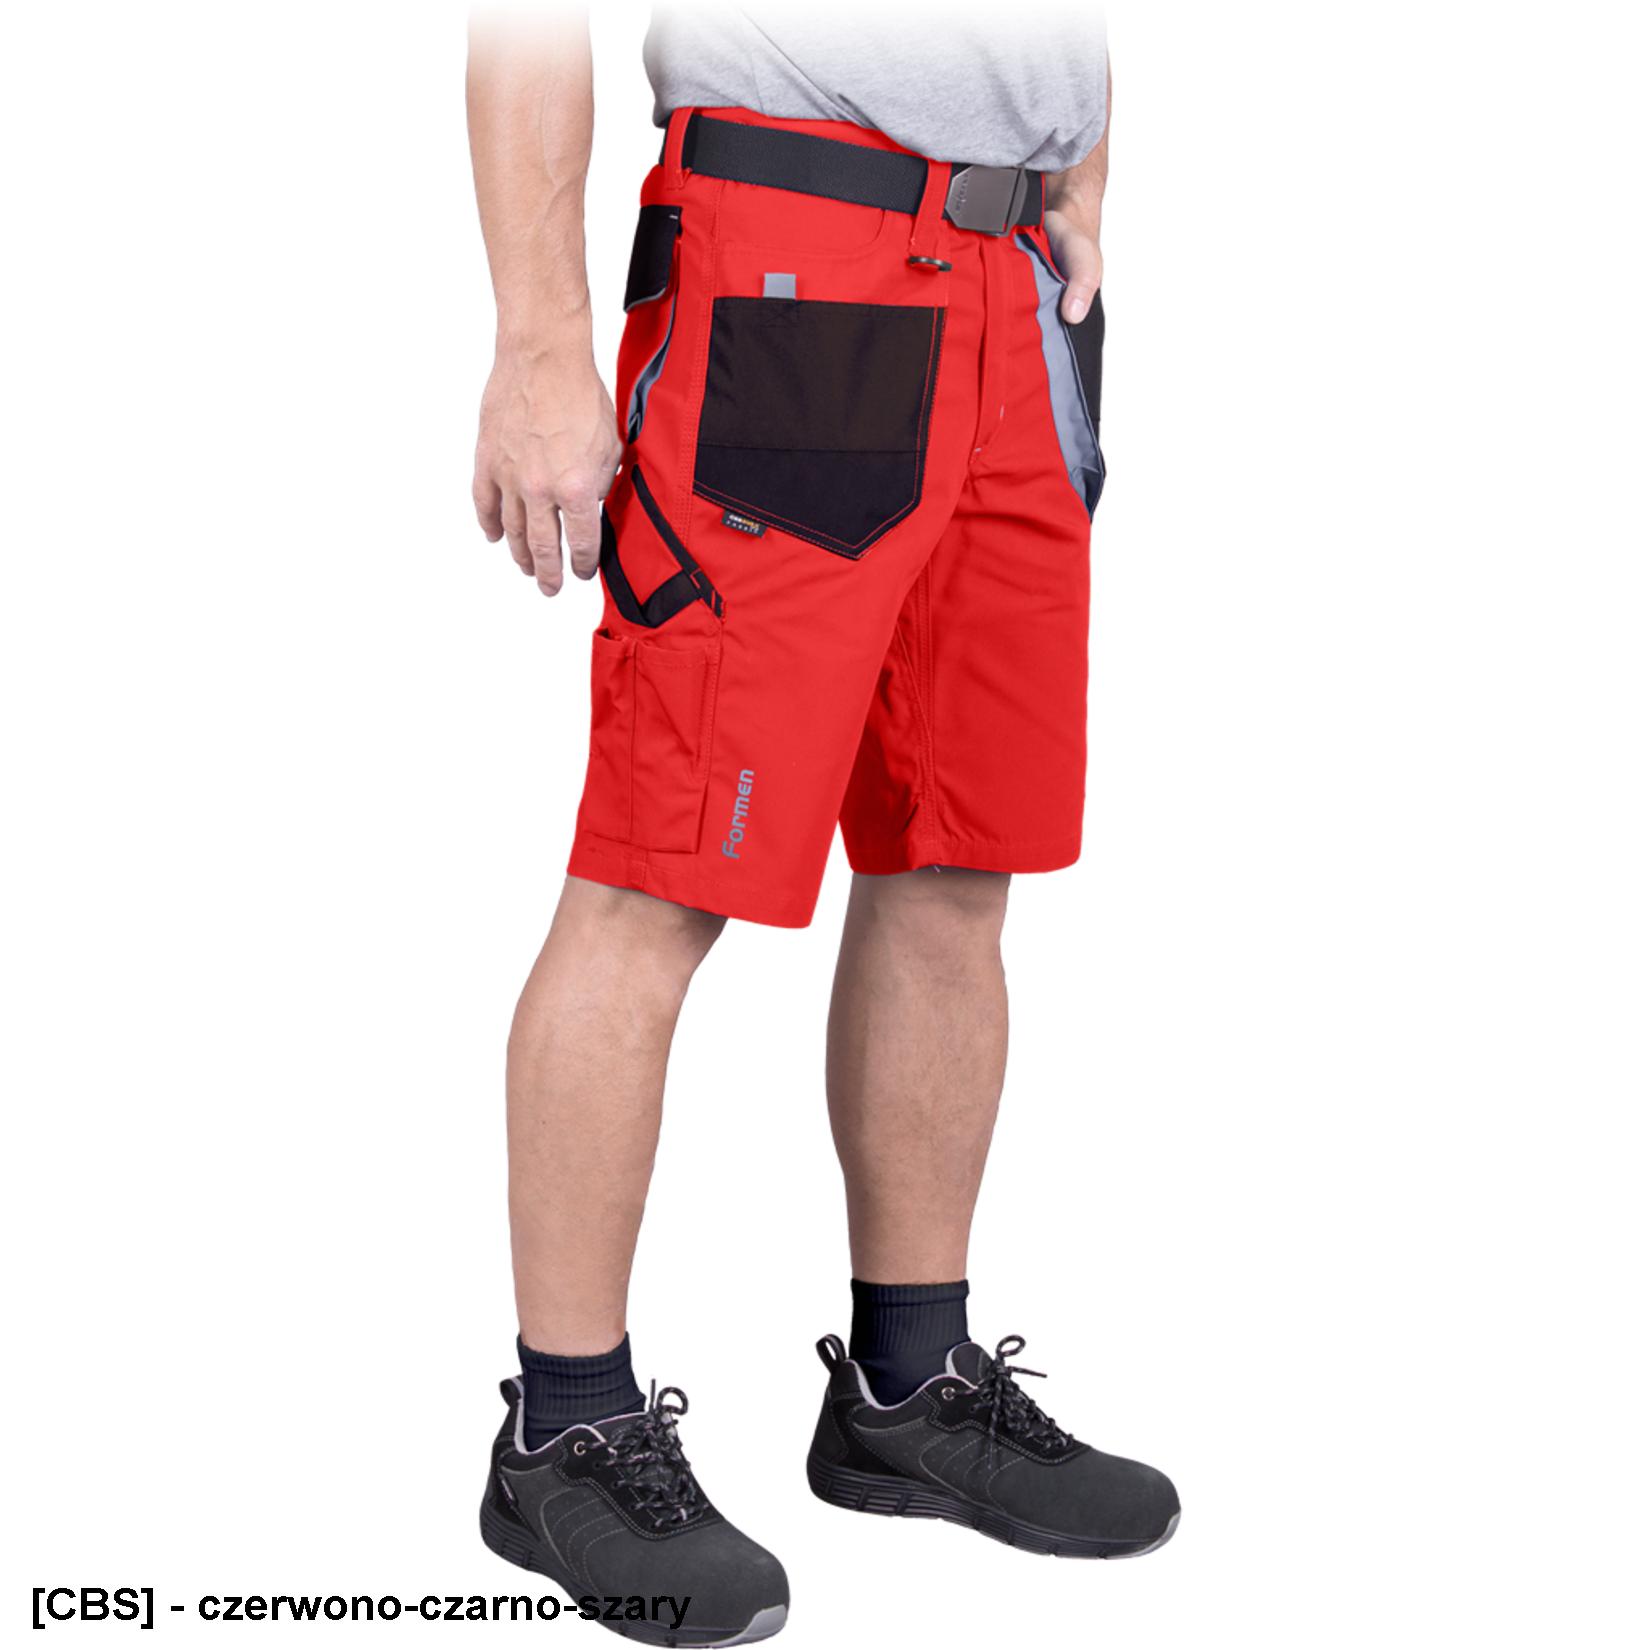 LH-FMN-TS - Spodnie ochronne do pasa FORMEN z krótkimi nogawkami - 13 kolorów - S-3XL